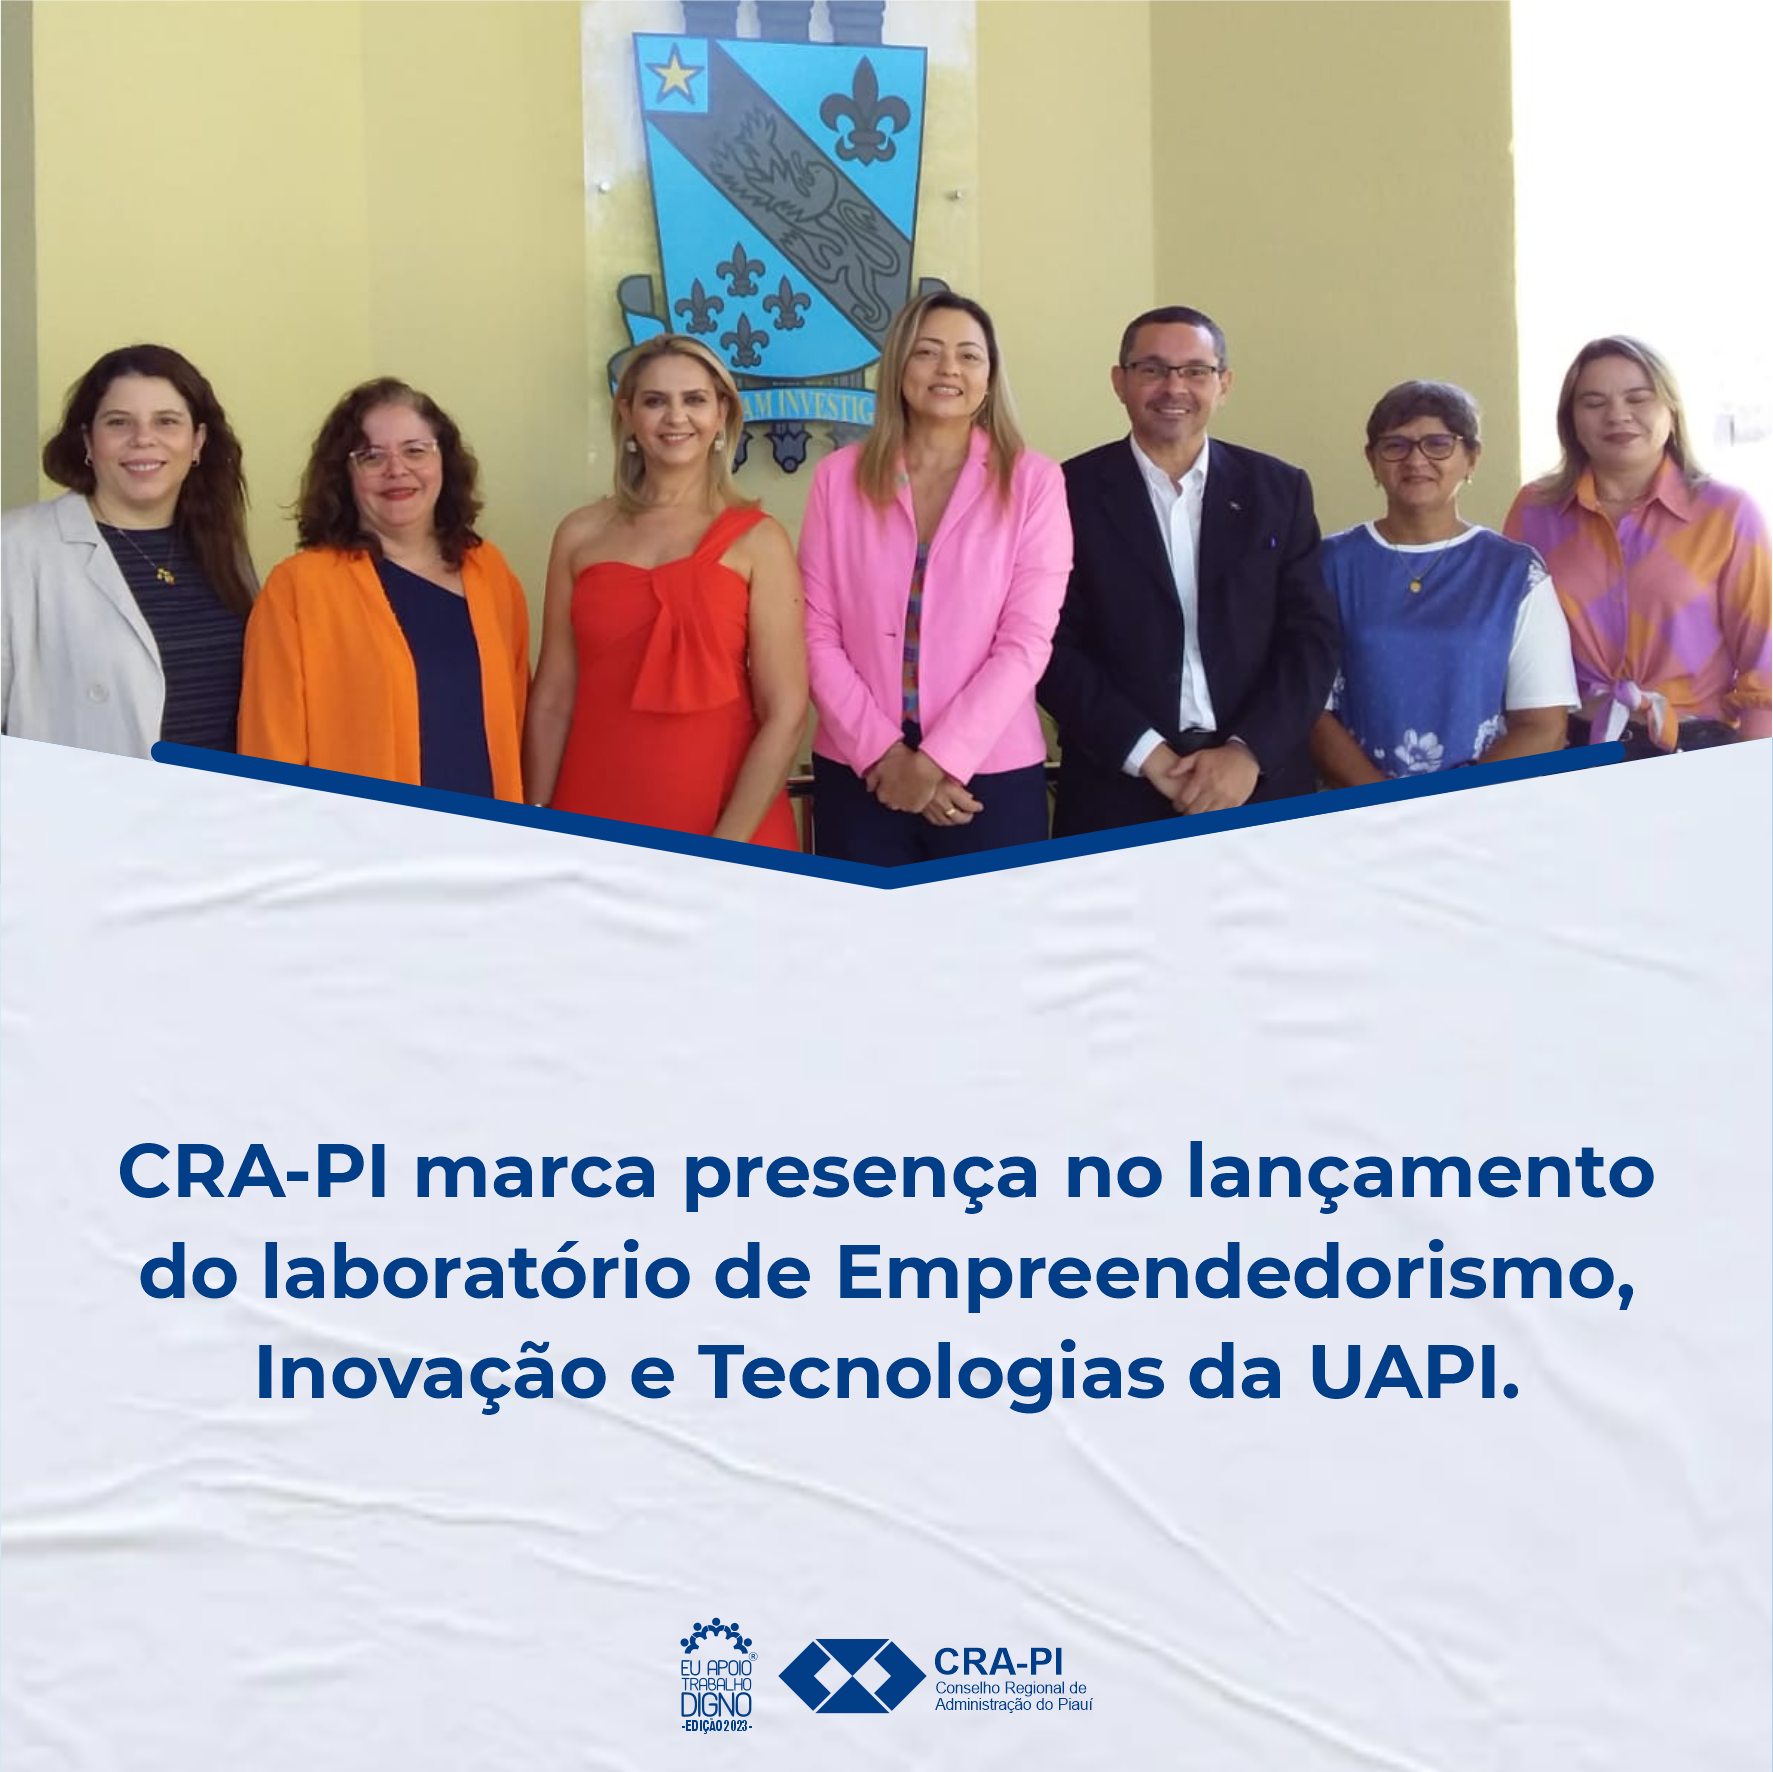 CRA-PI marca presença no lançamento do laboratório de Empreendedorismo, Inovação e Tecnologias da UAPI.